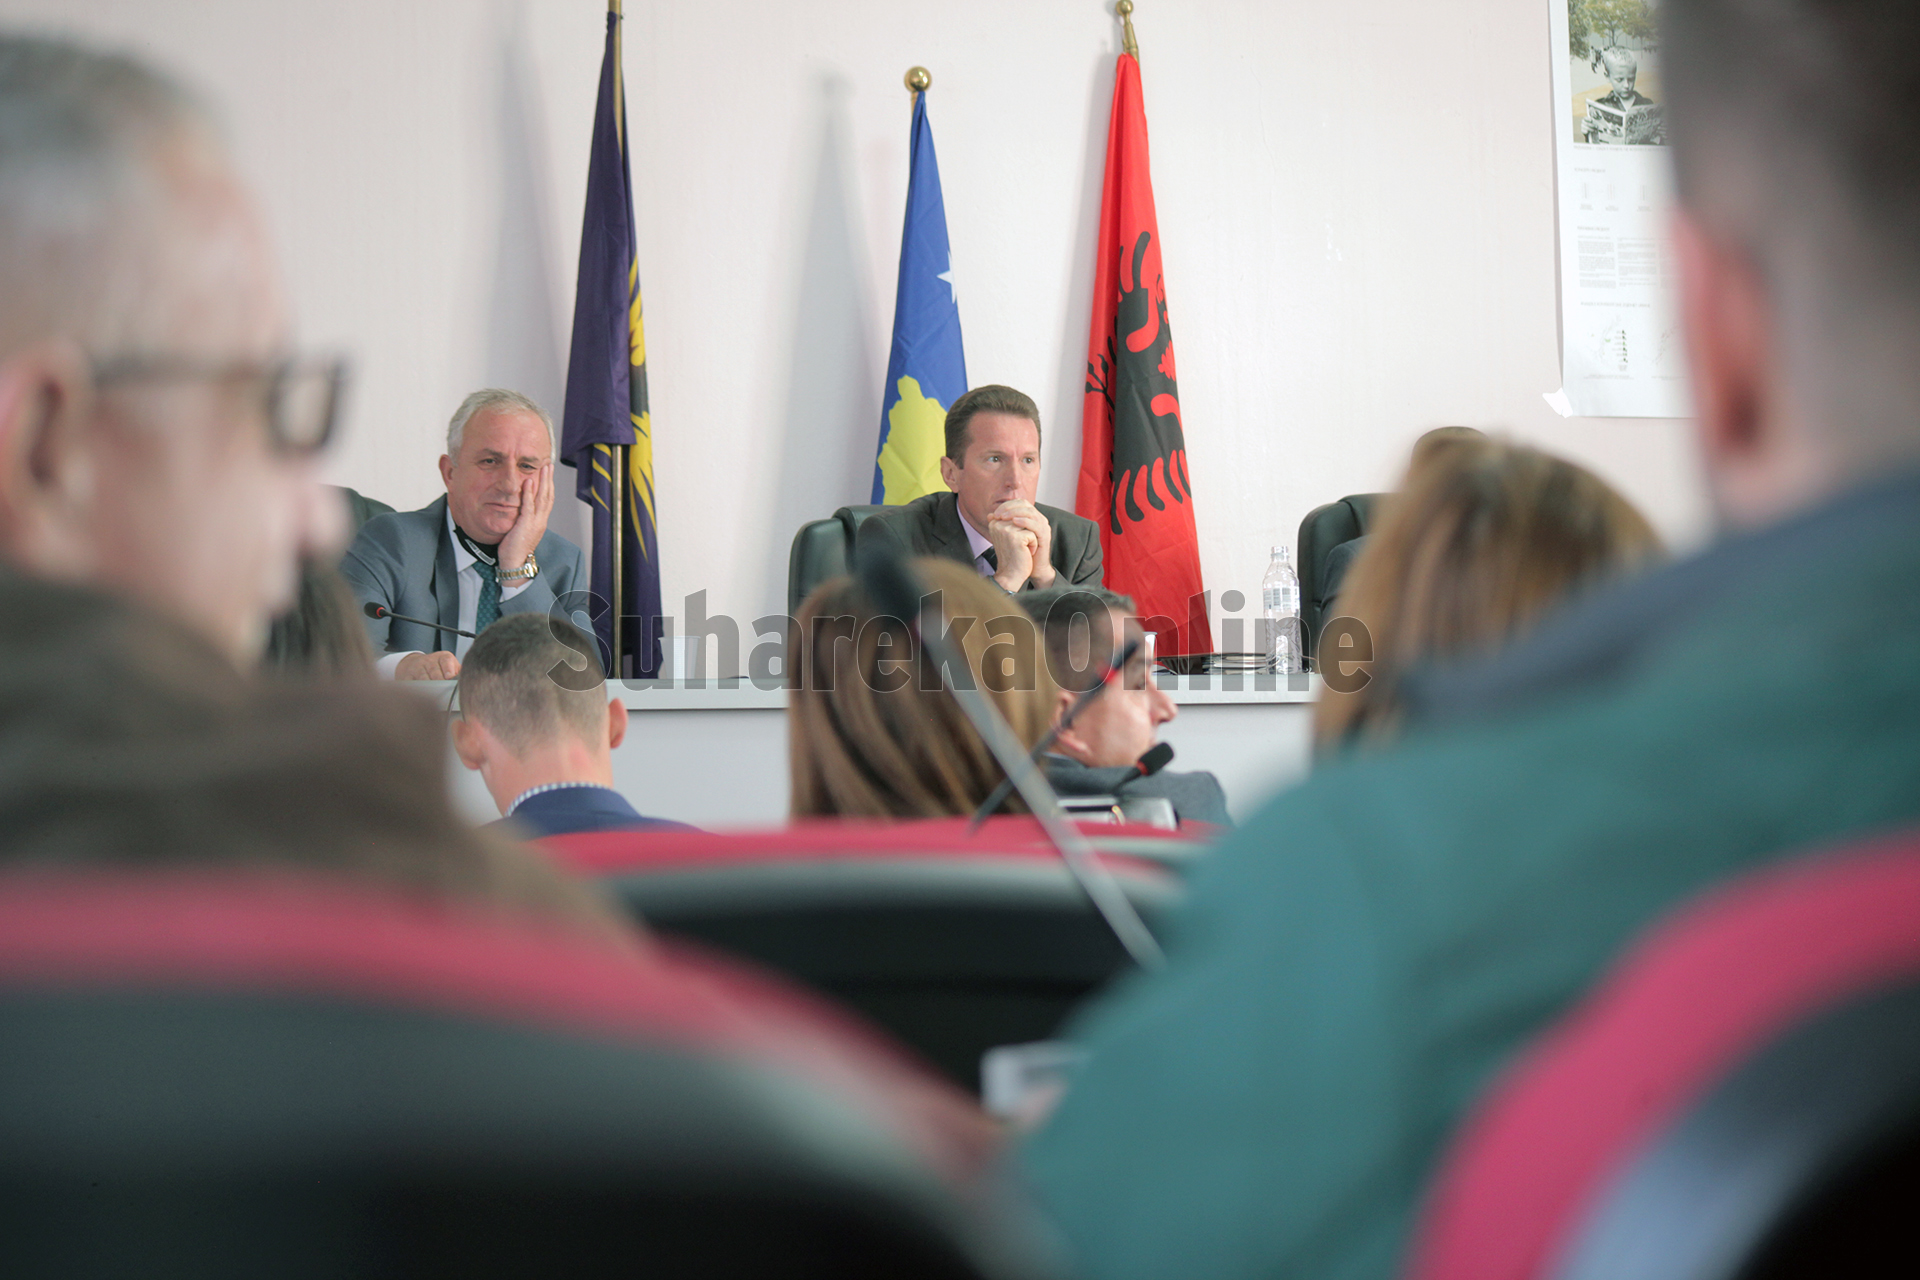 Suharekë, më 28 janar mbledhja e parë për vitin 2022 e Asamblesë Komunale